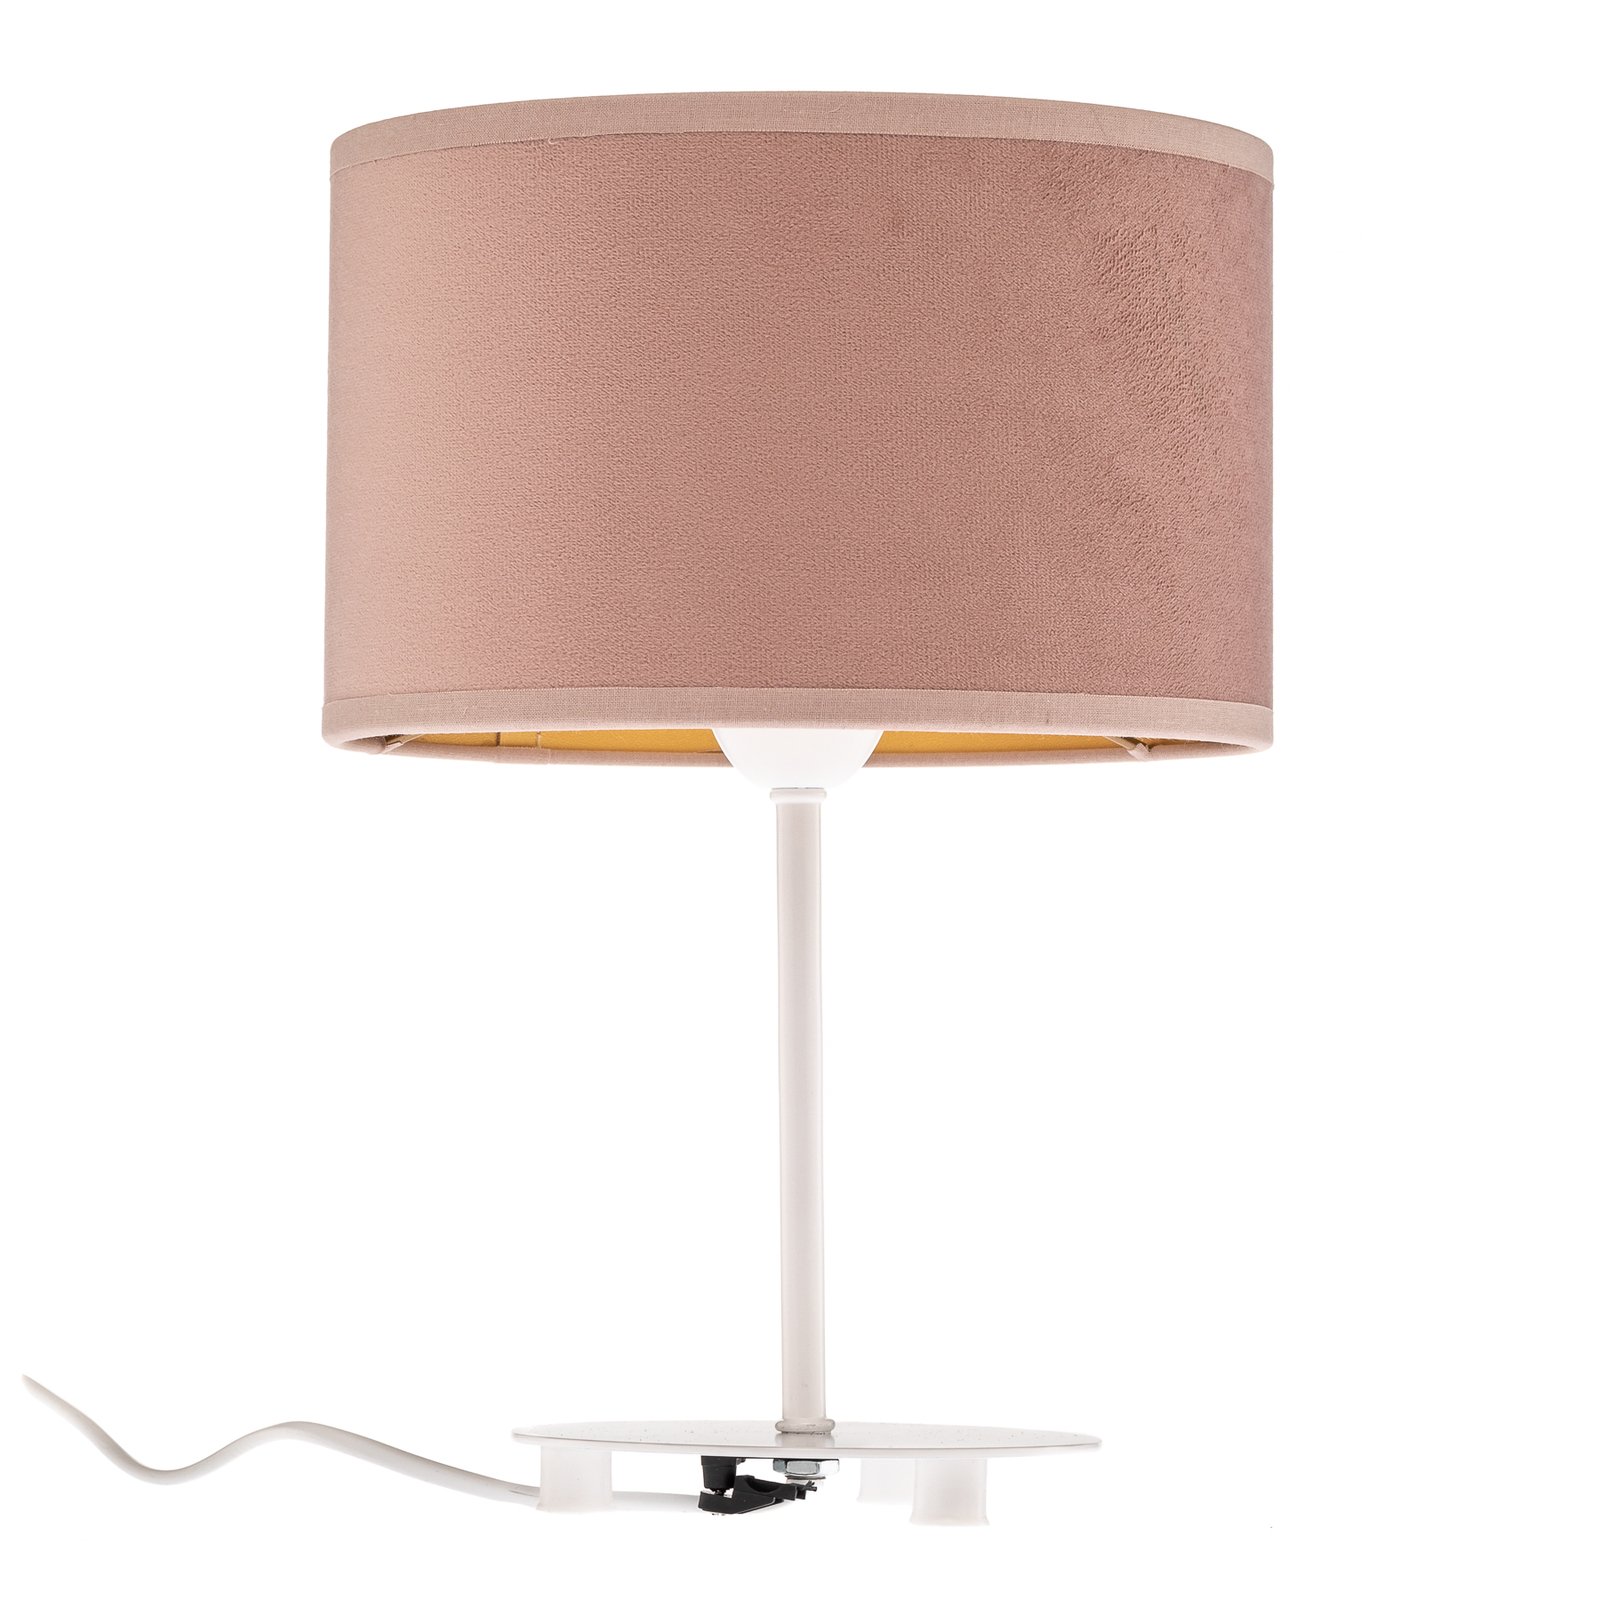 Golden Roller asztali lámpa 30cm rózsaszín / arany